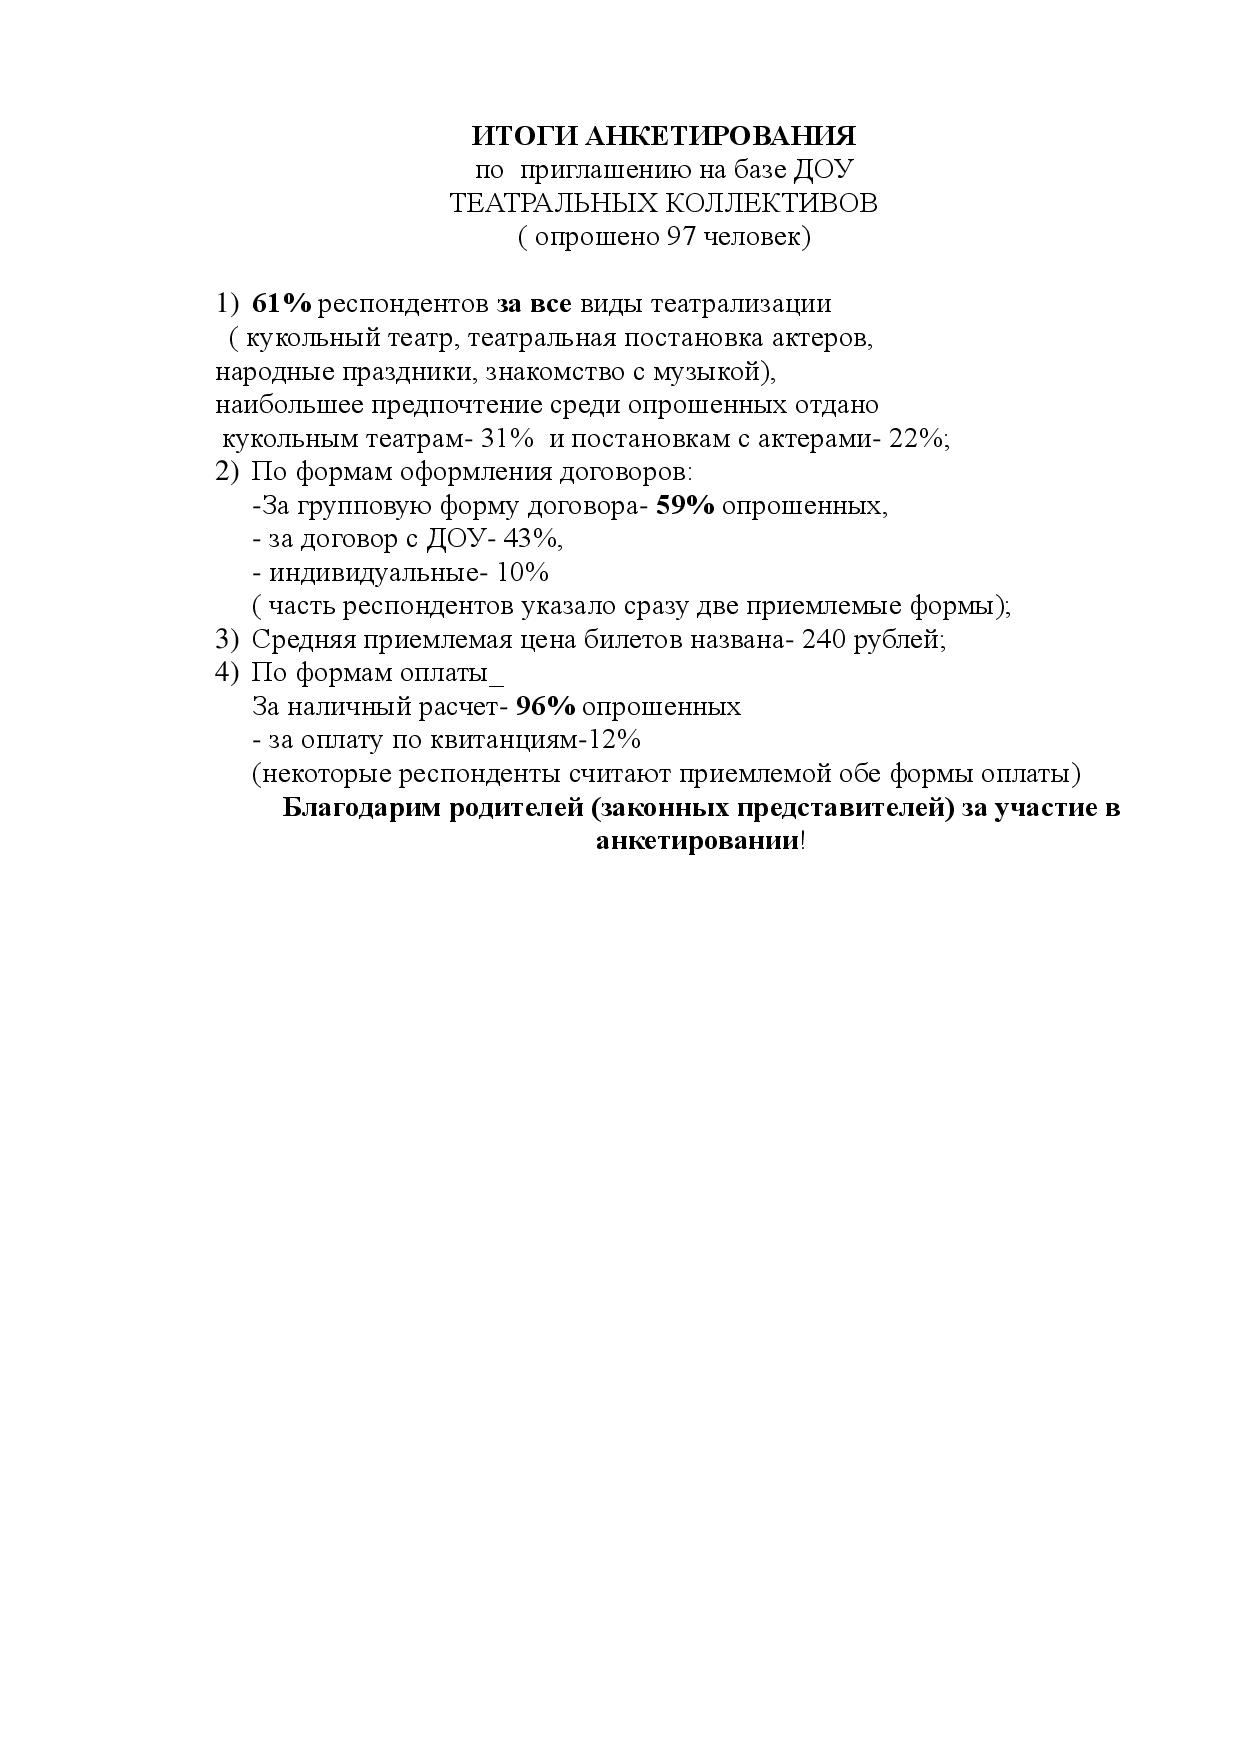 Итоги анкетирования по приглашению на базе ДОУ театральных коллективов